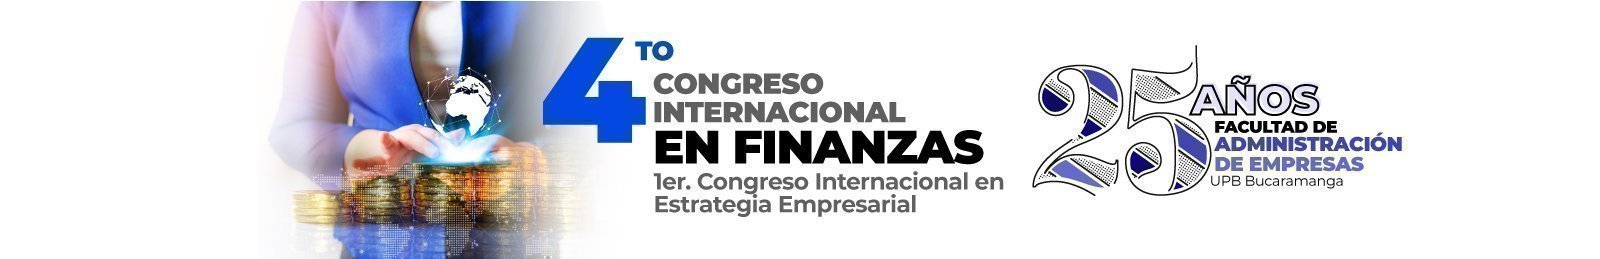 Banner congreso de finanzas